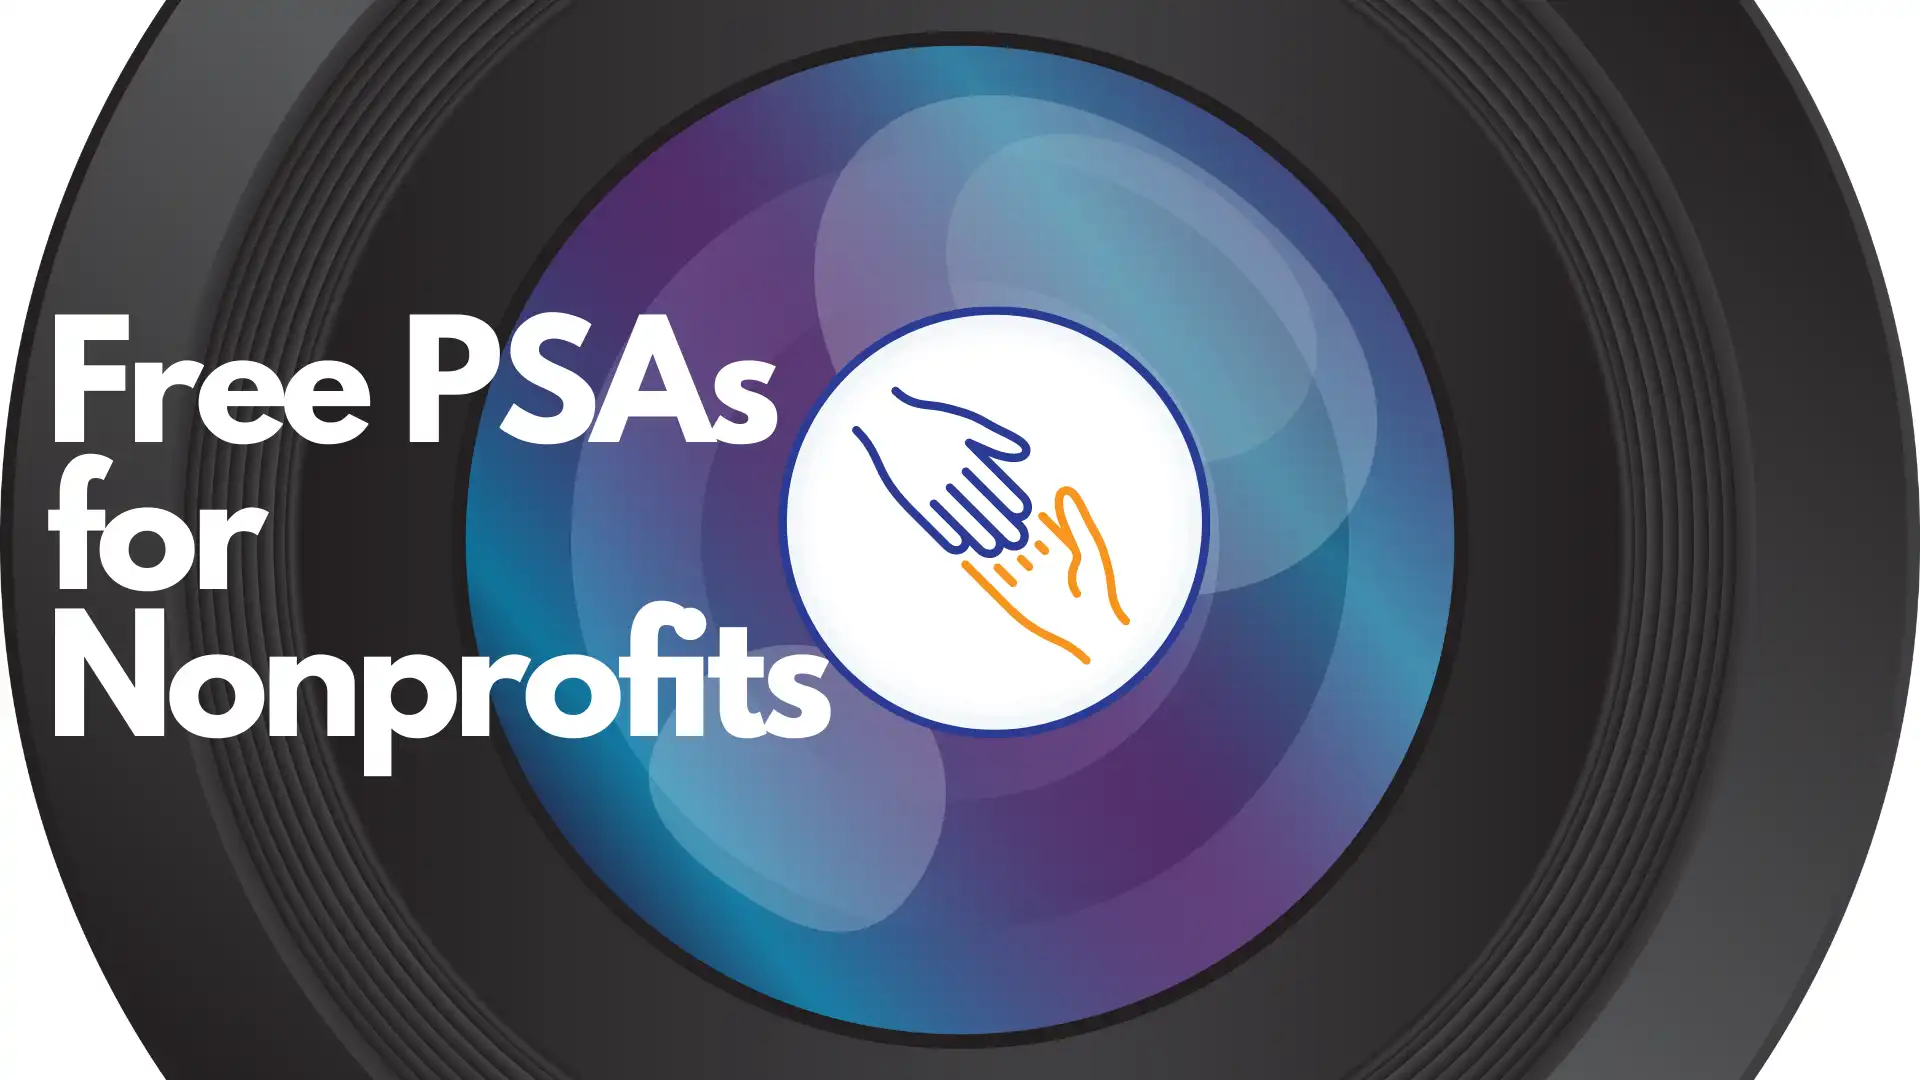 Free PSAs for Nonprofits (1)[81618]